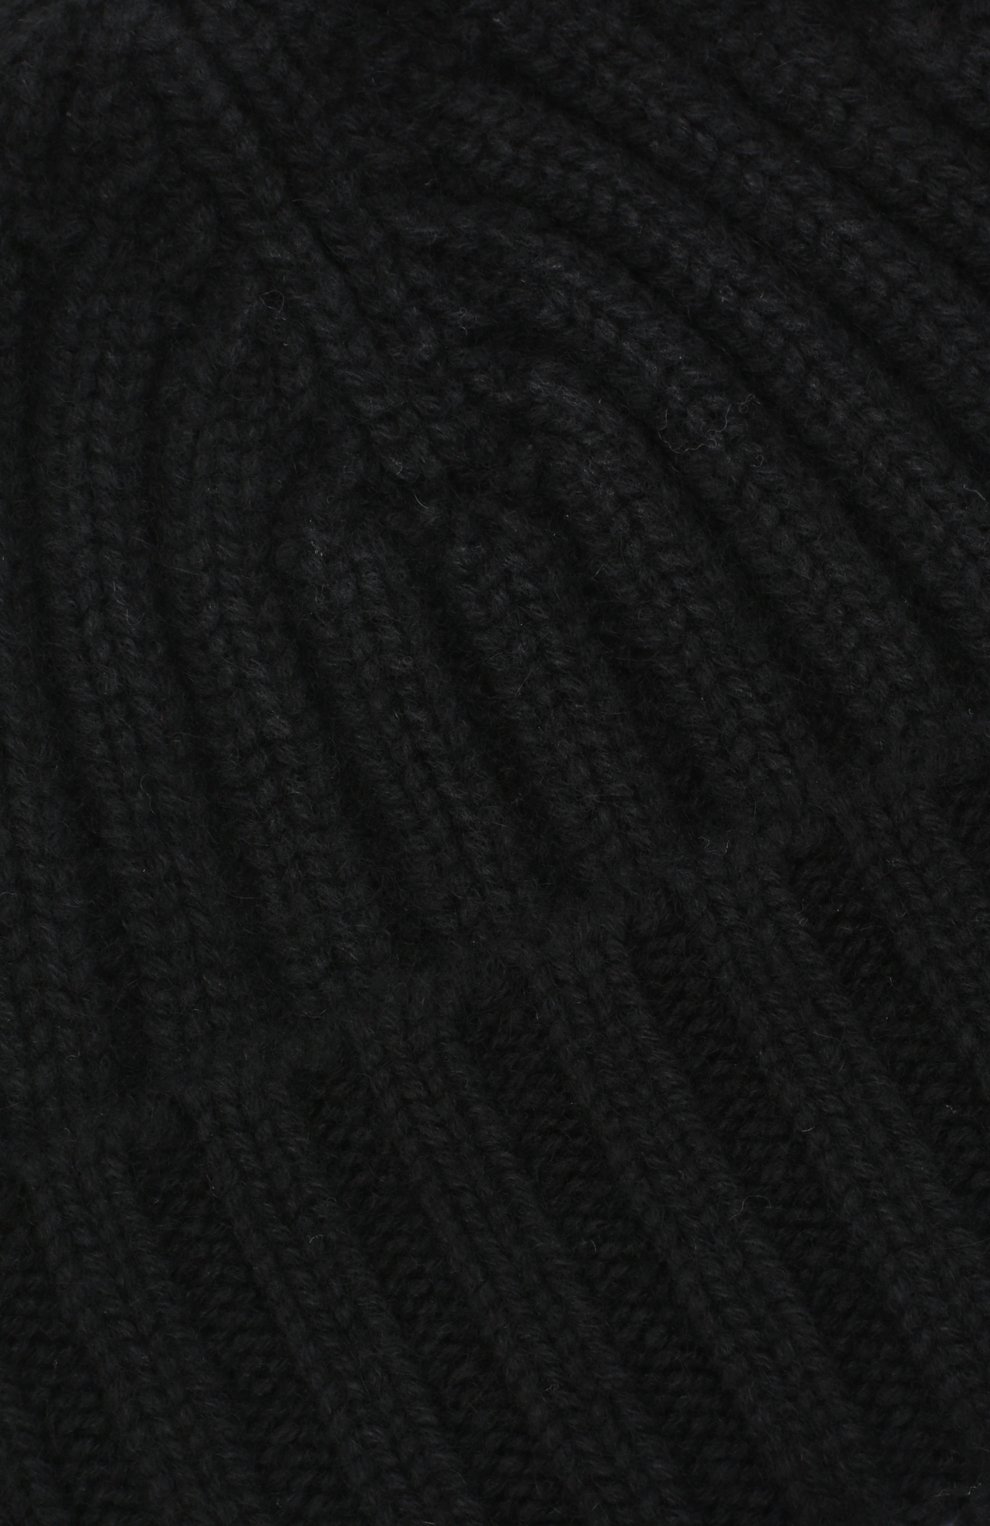 Мужская кашемировая шапка ALLUDE черного цвета, арт. 205/60050 | Фото 3 (Материал: Текстиль, Кашемир, Шерсть; Кросс-КТ: Трикотаж)